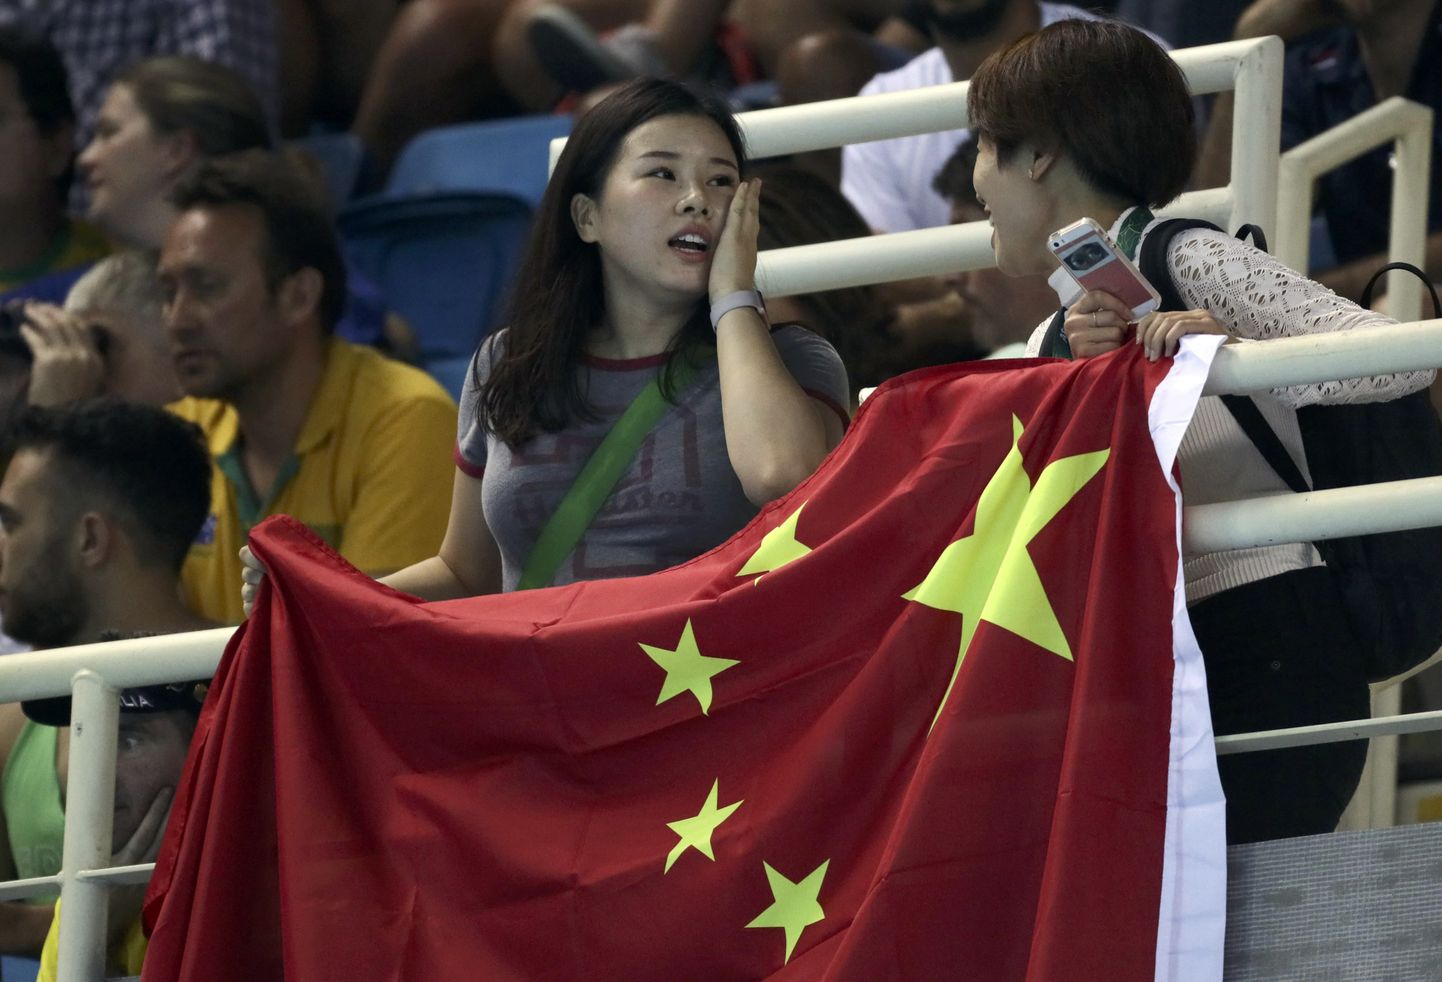 Китайские болельщики взяли с собой флаг с правильно изображенной символикой.